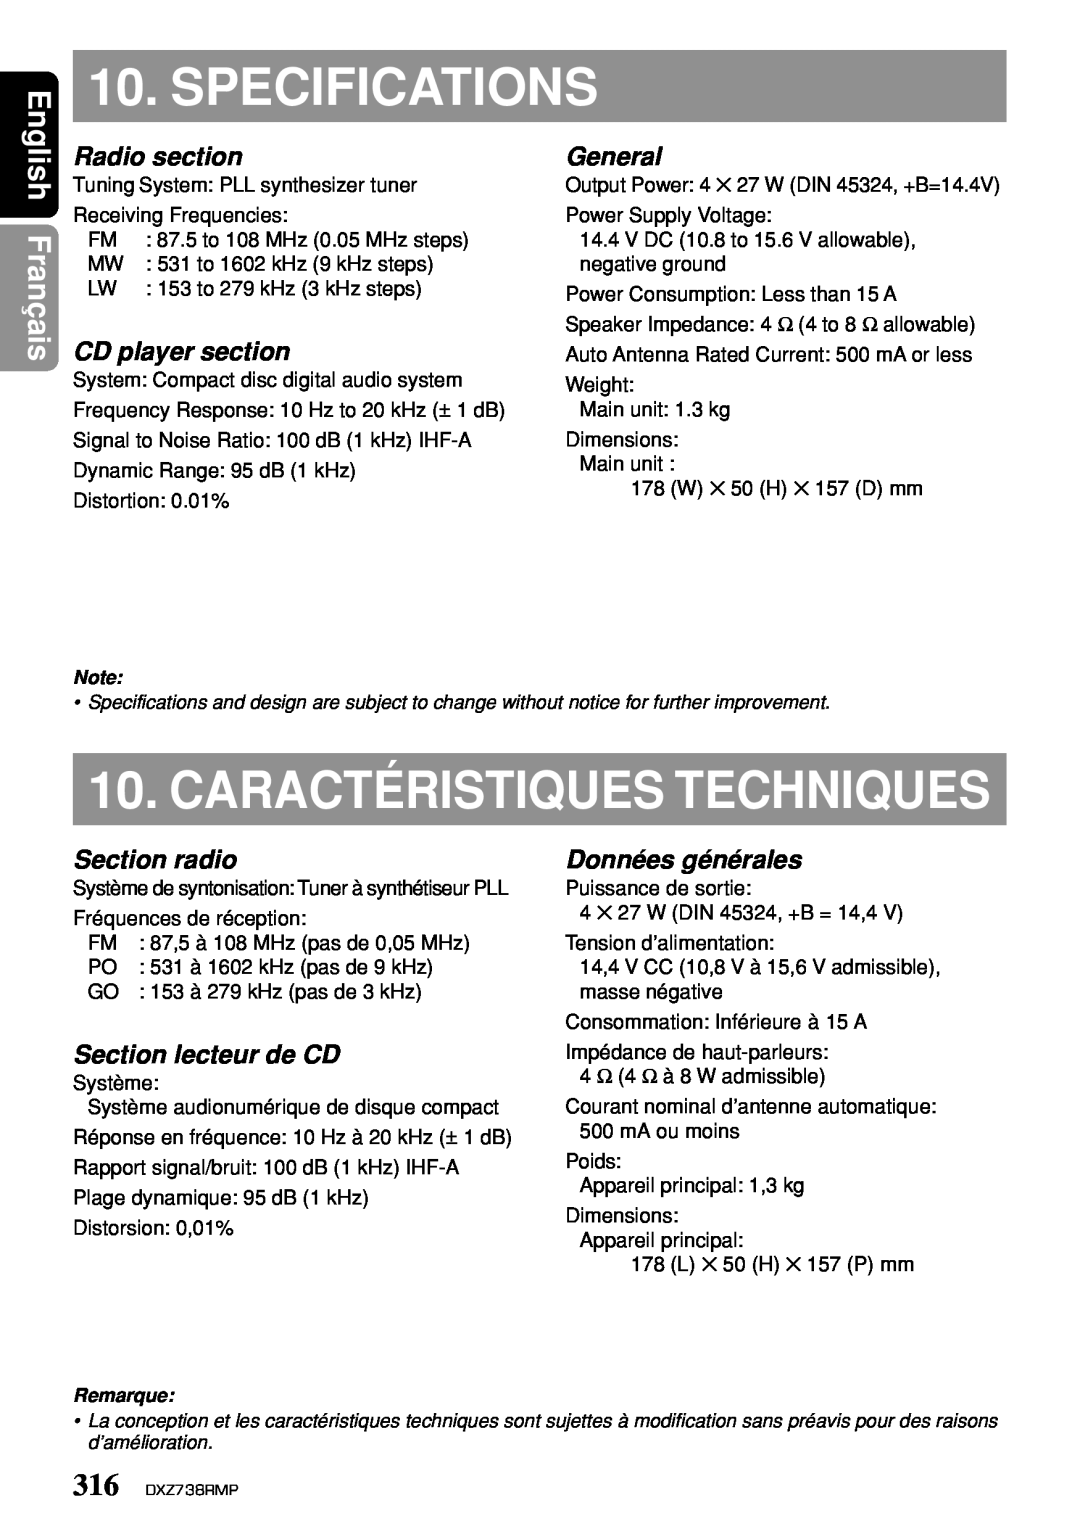 Clarion dxz738rmp Specifications, Français, Radio section, CD player section, General, Section radio, Données générales 